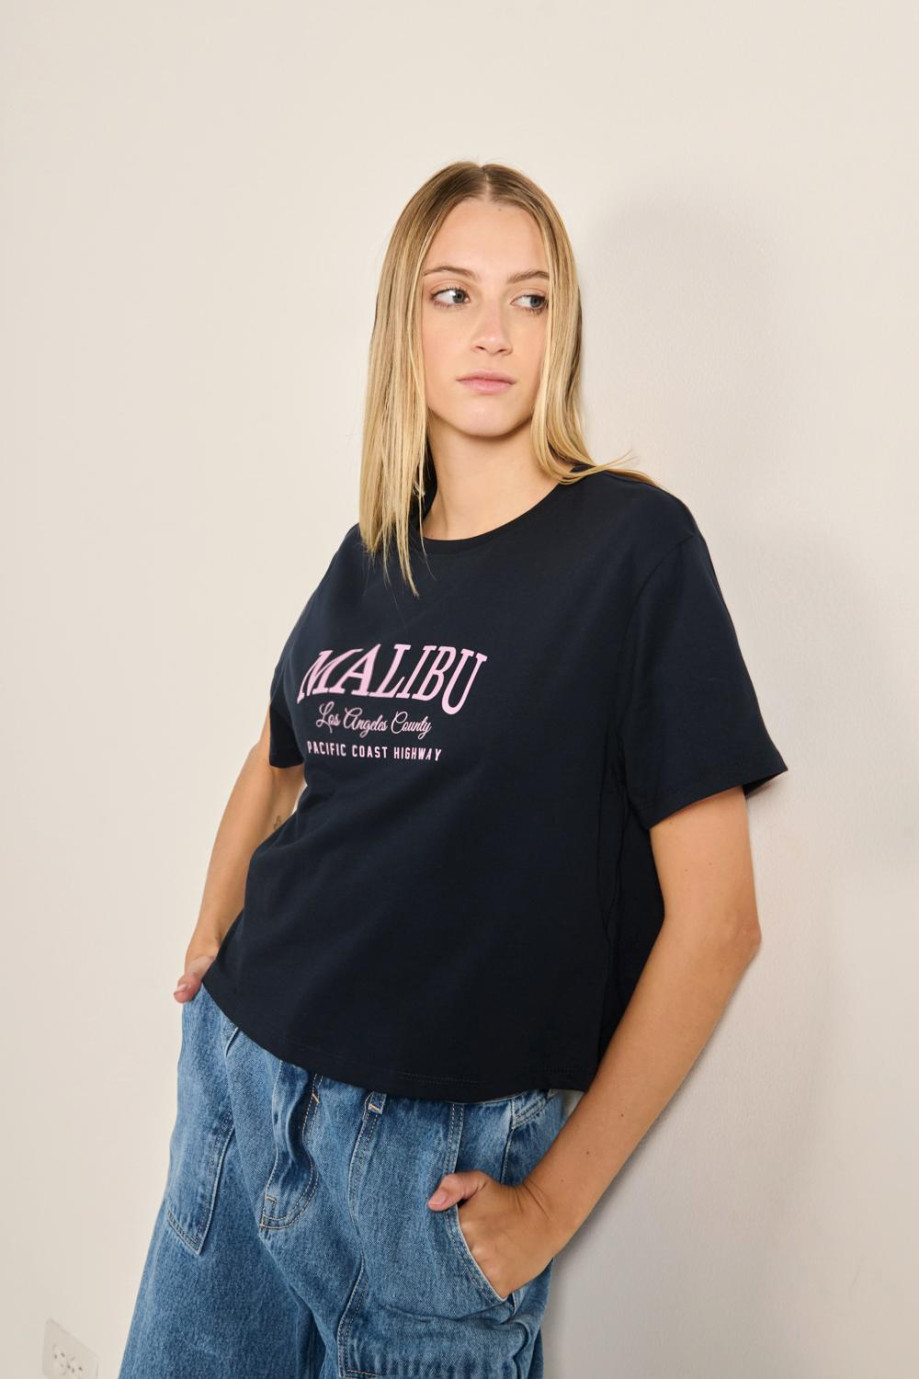 Camiseta unicolor crop top con texto college de Malibú